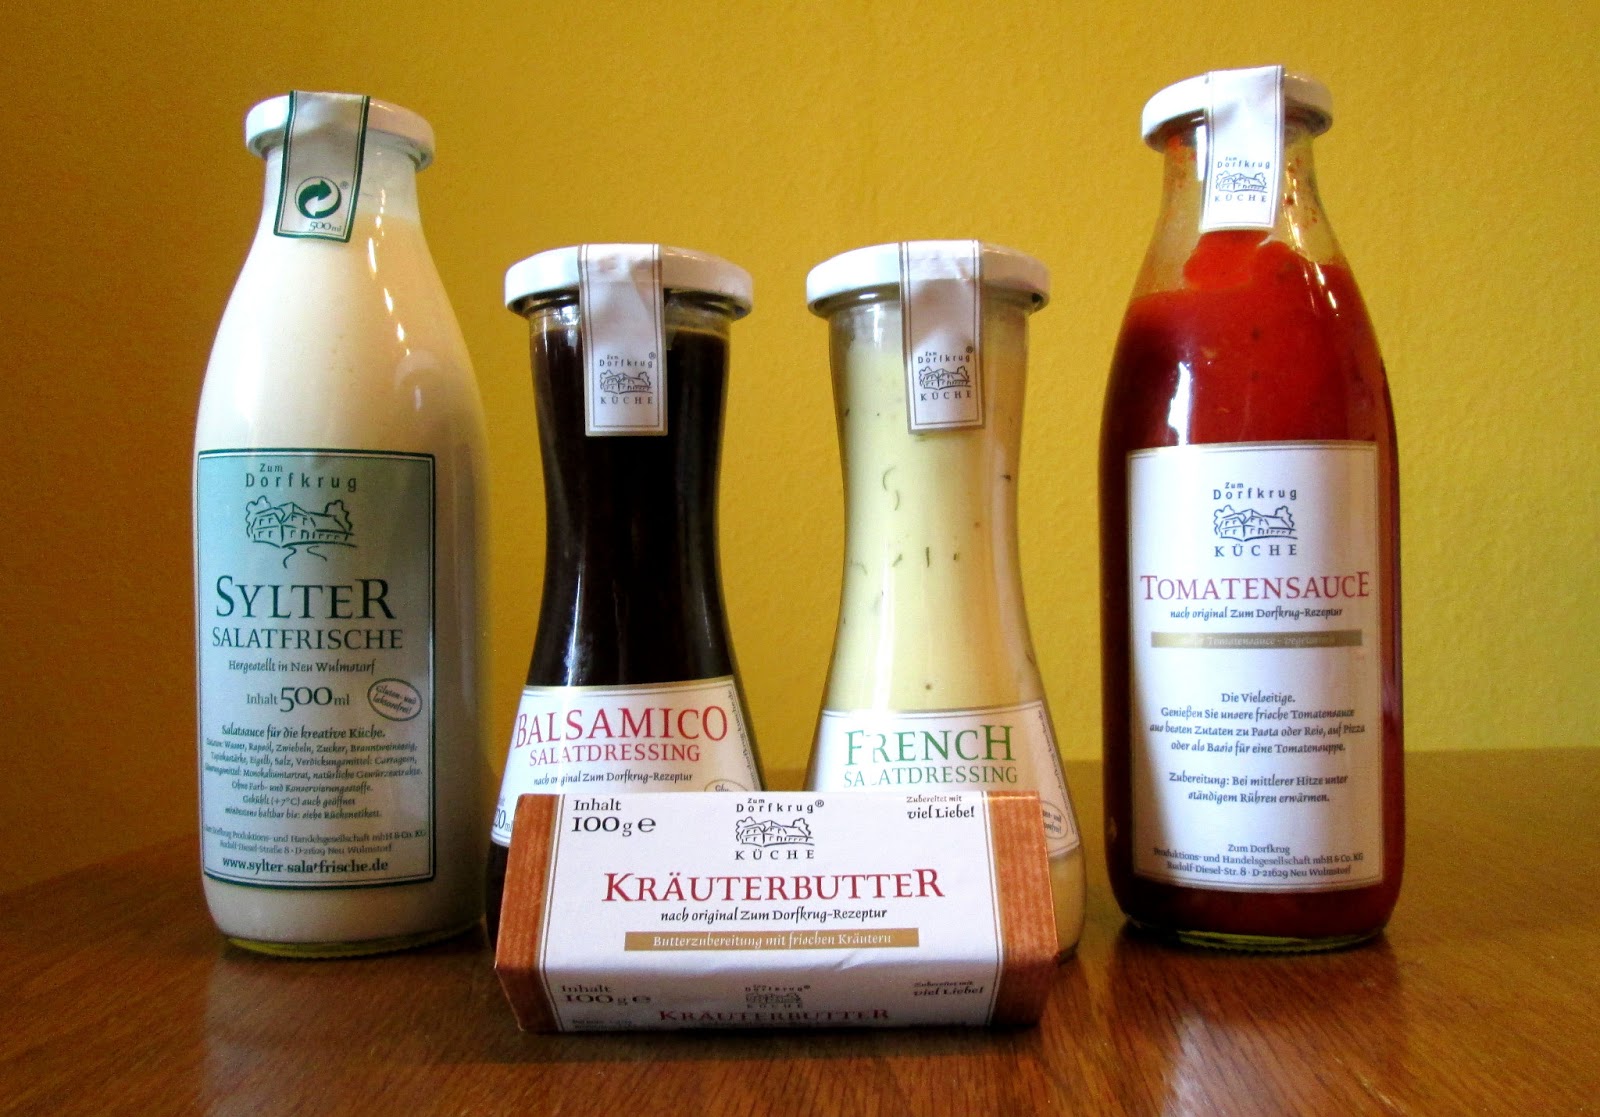 Produkttest - Zum Dorfkrug - Sylter Salatfrische - Bettys Produktreich